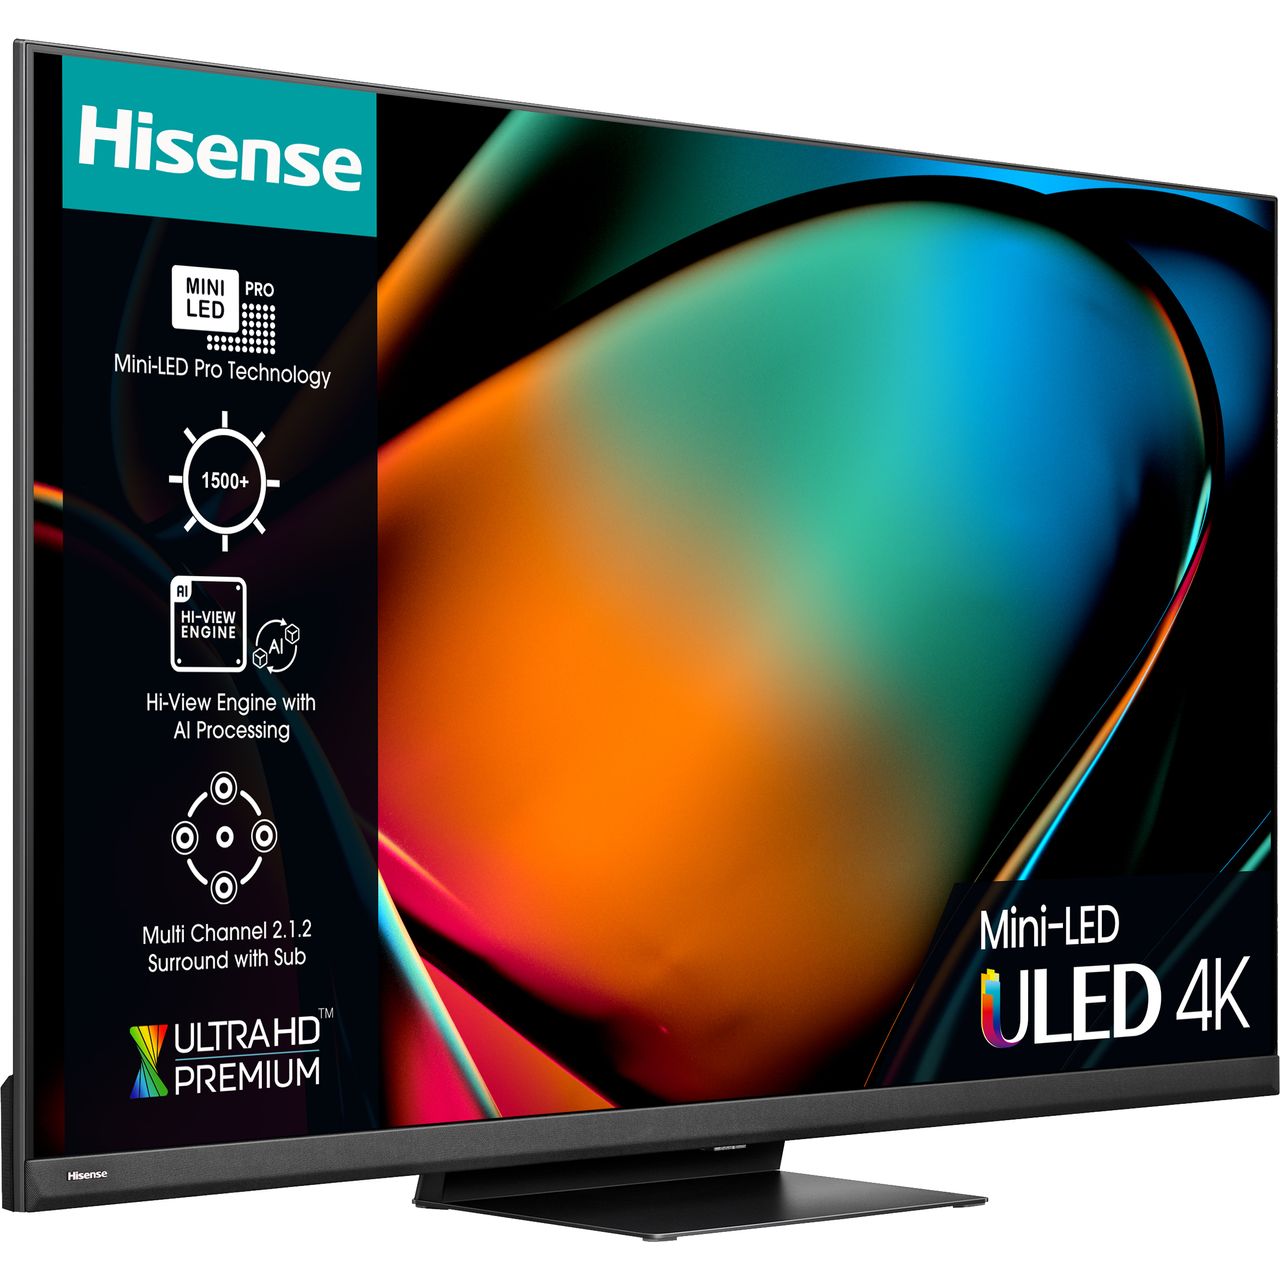 VIDEO: Hisense U8K Mini LED TV Review